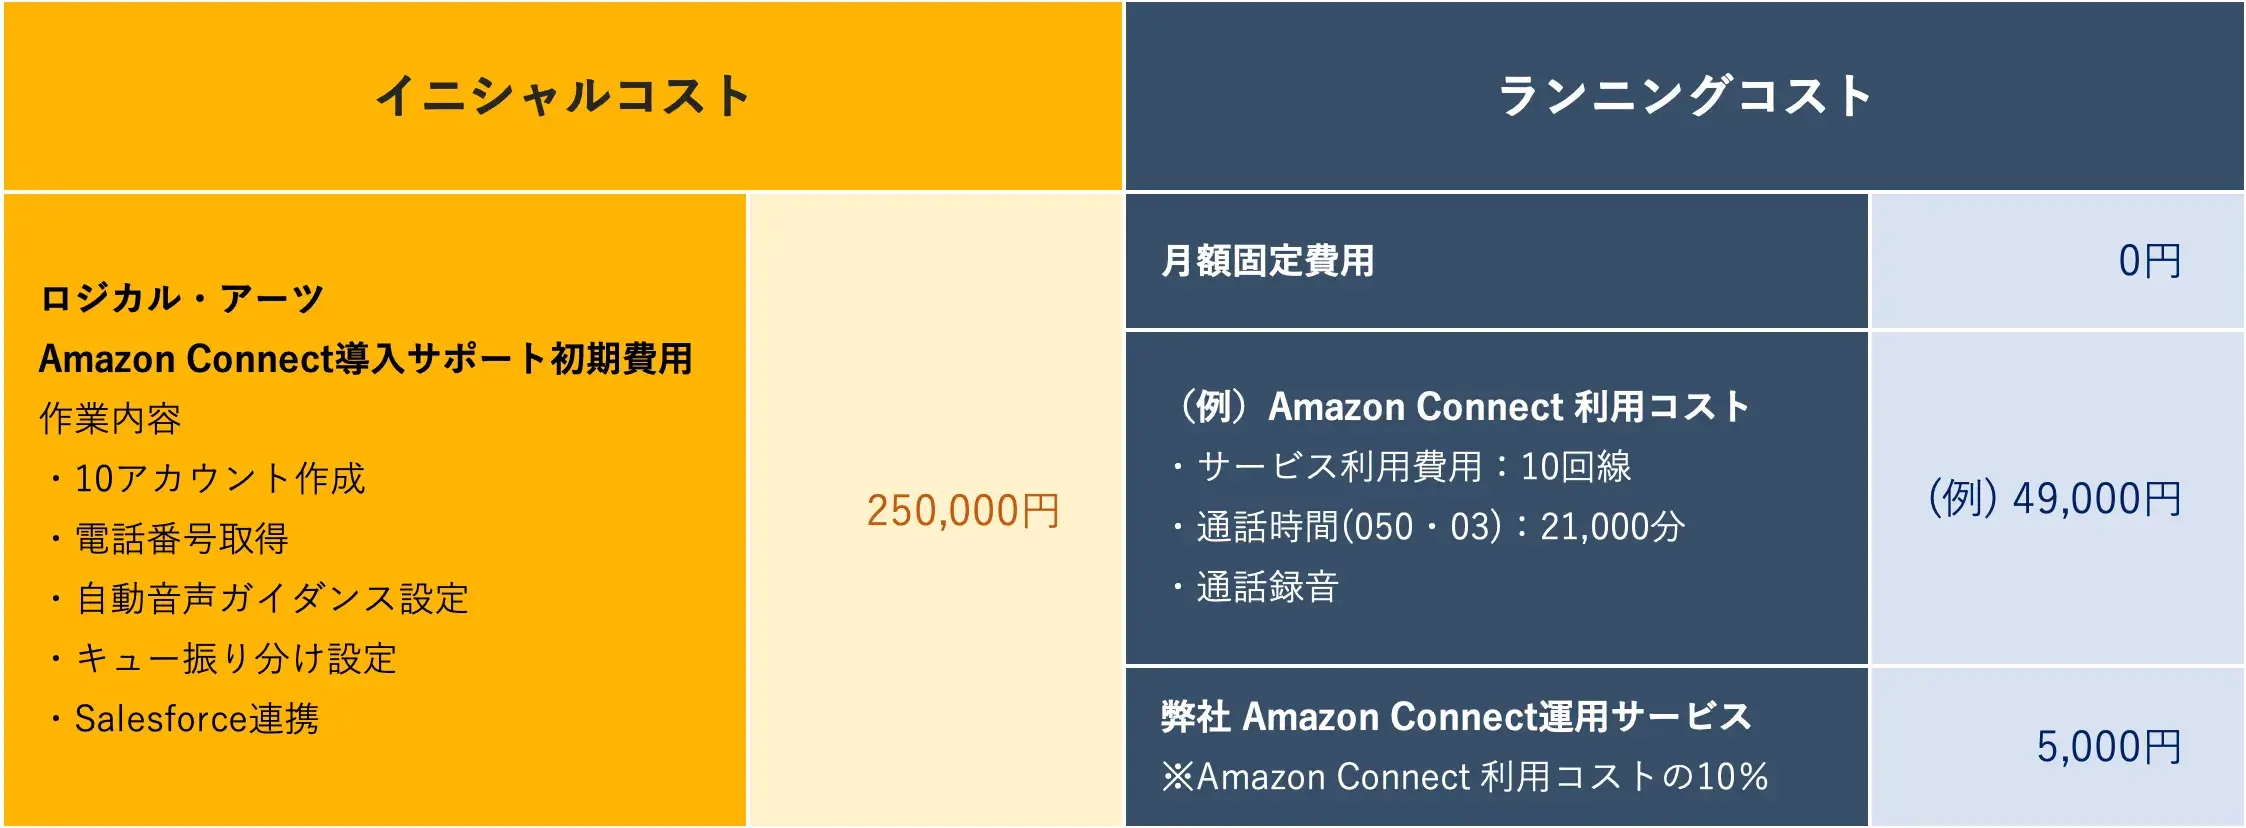 Amazon Connect費用シミュレーション